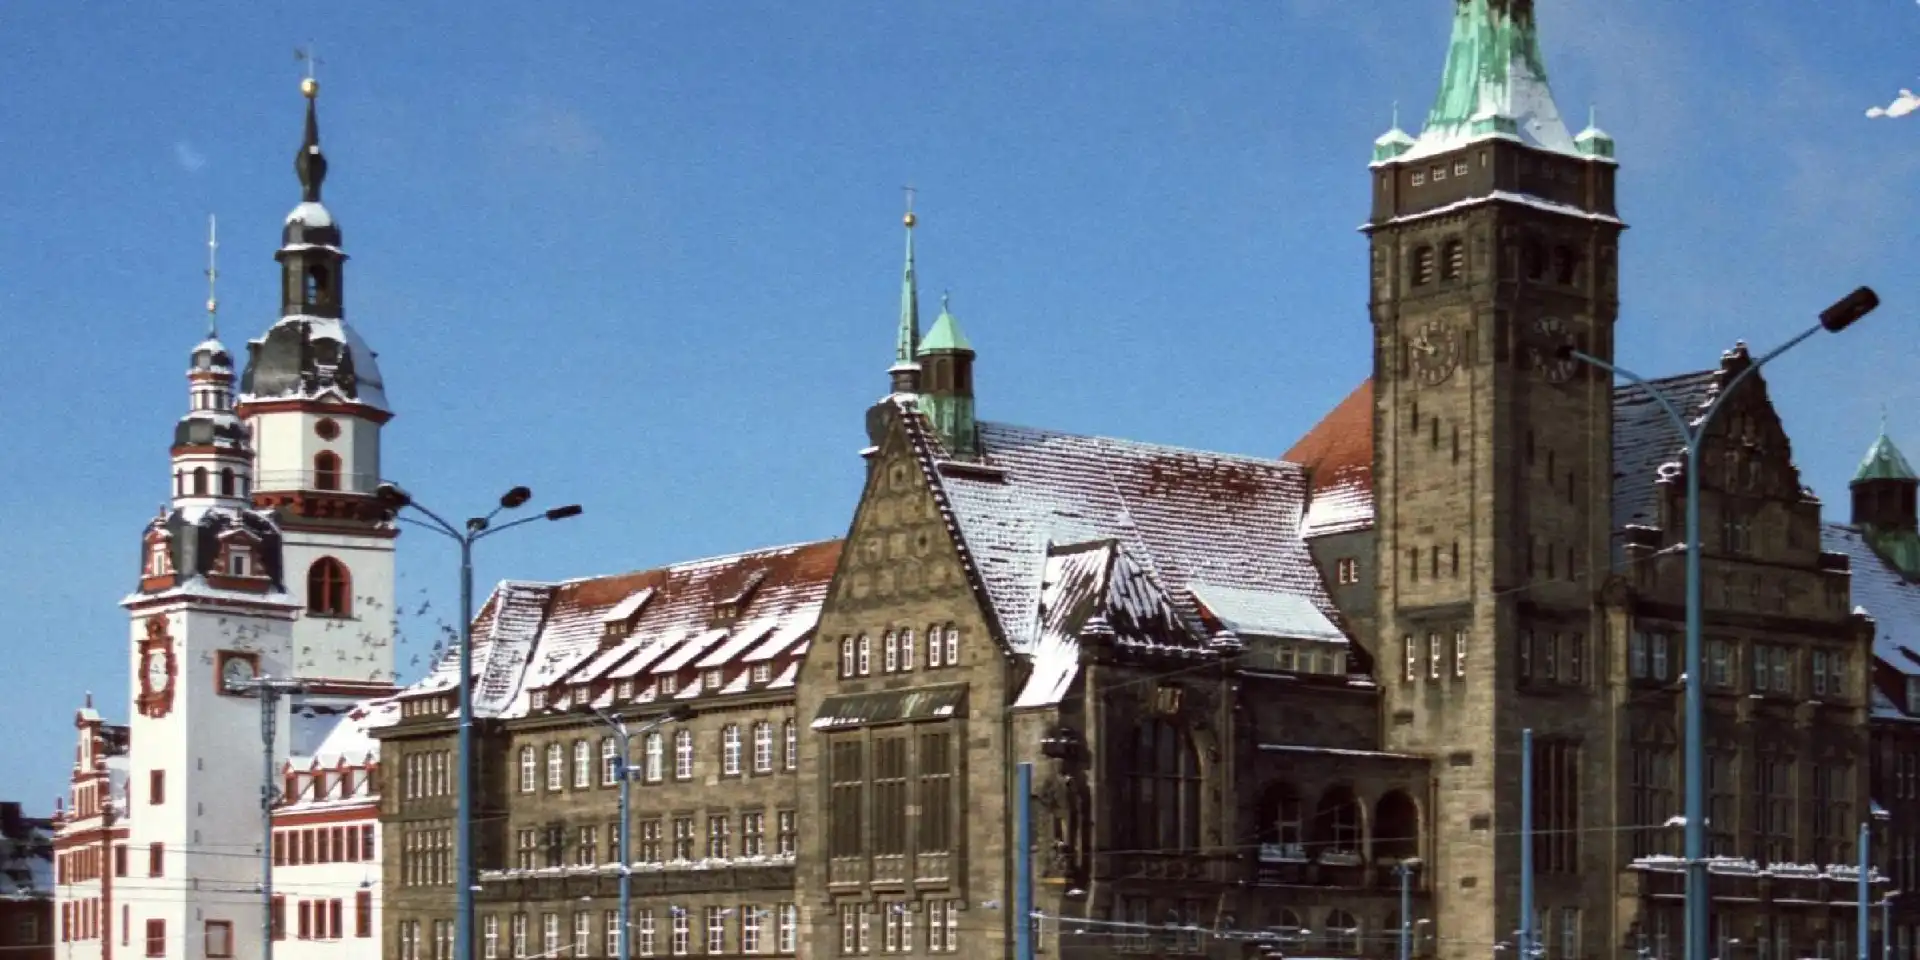 Stadt Chemnitz im Winter